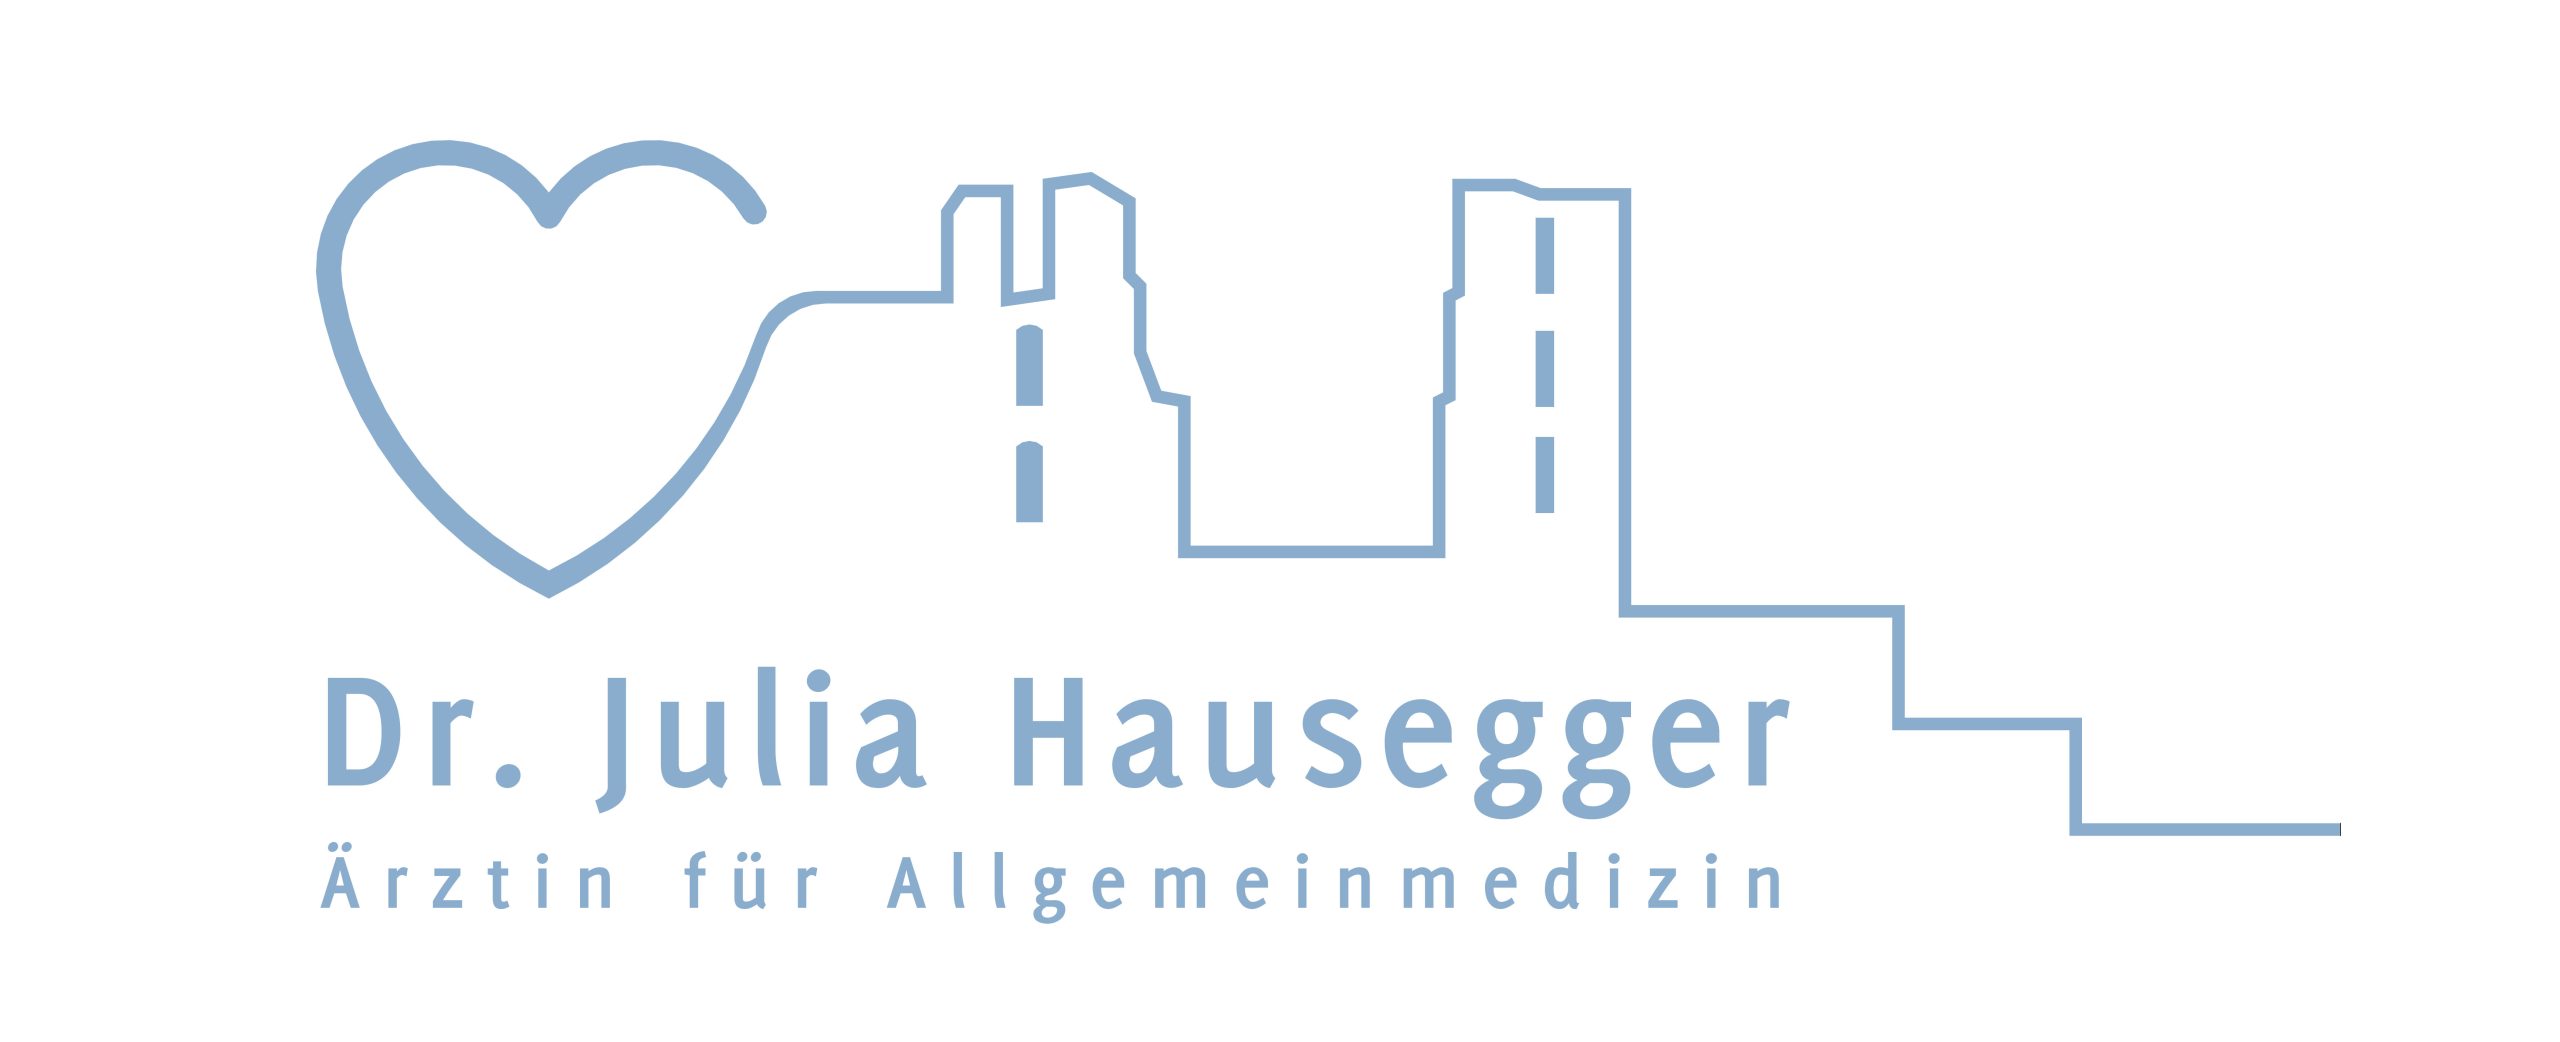 Dr. Julia Hausegger